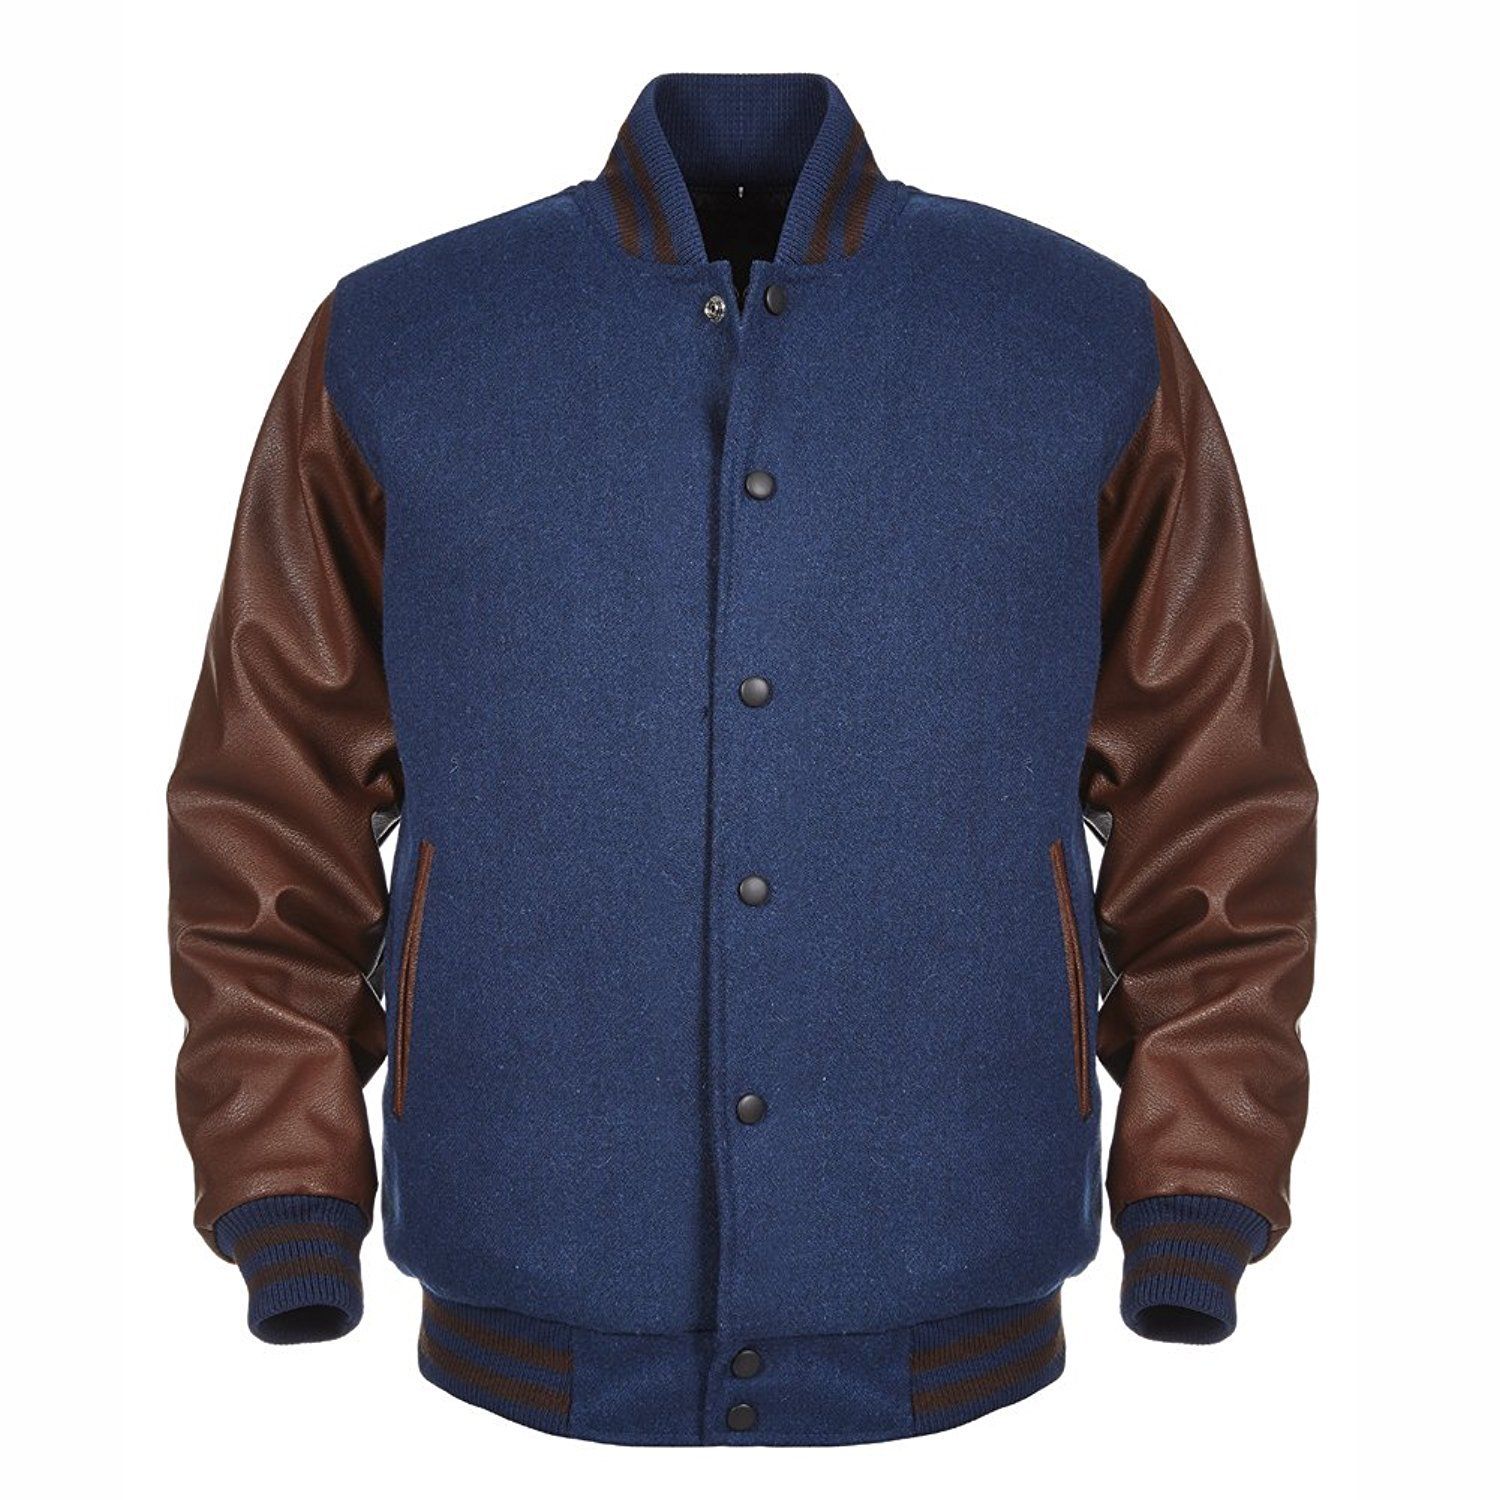 Spine Spark Navy Blue Wool Varsity Jacket Brown Leather Sleeves